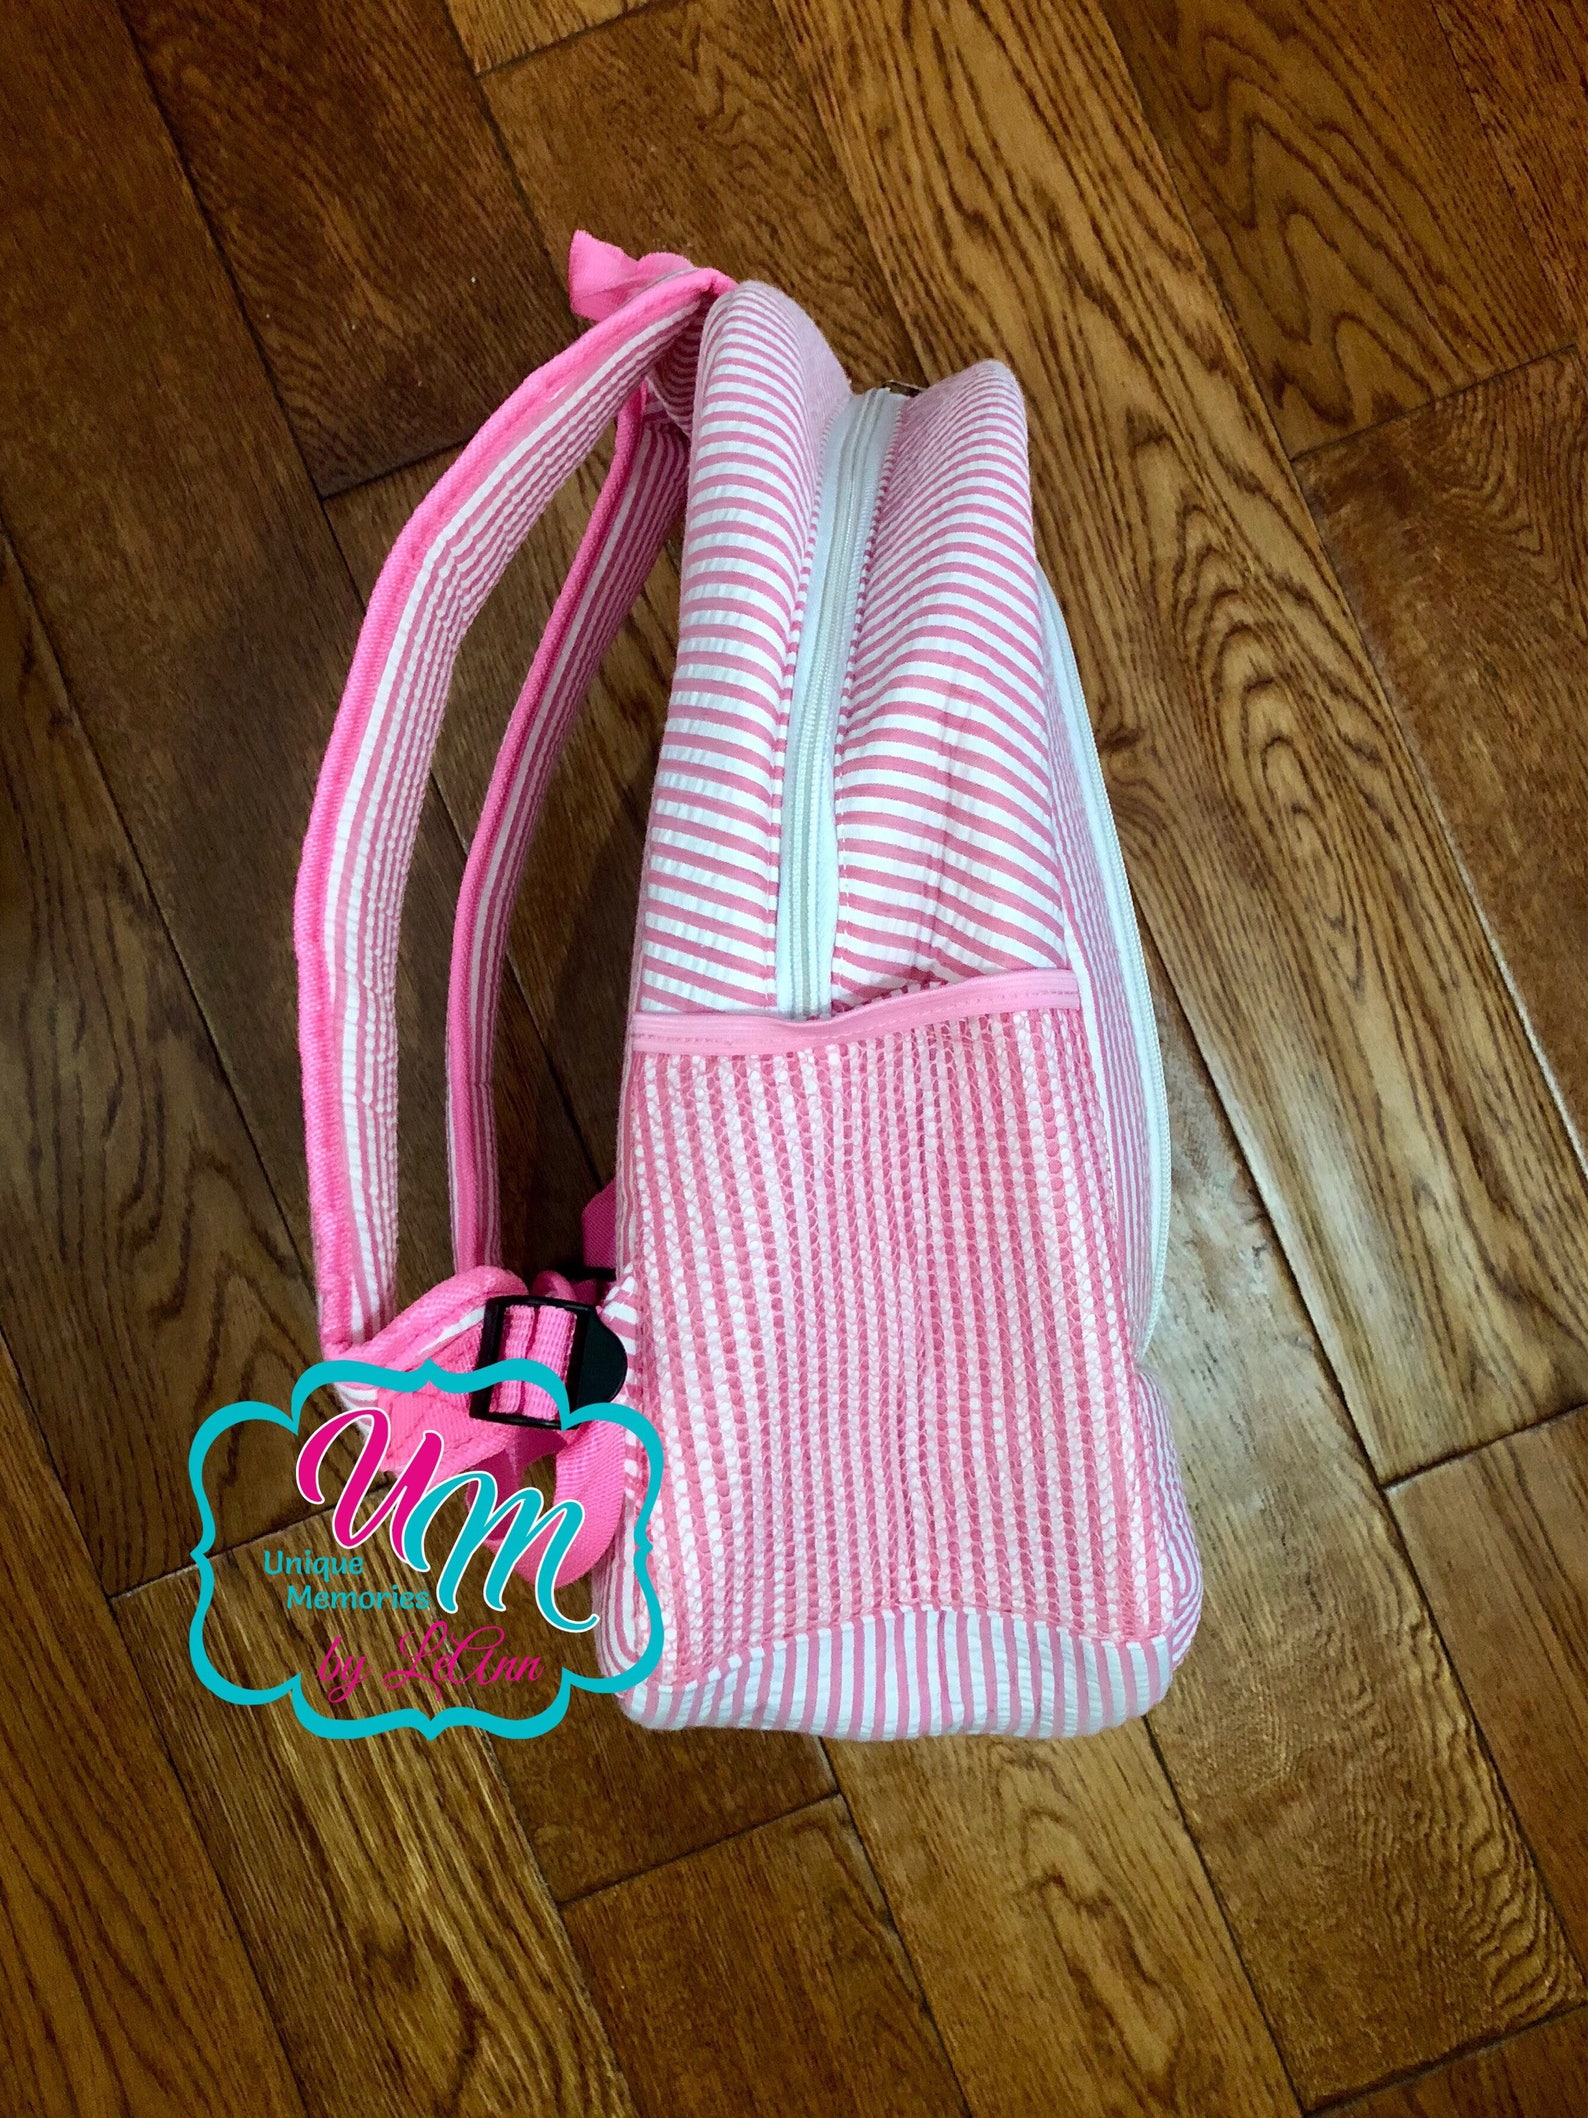 seersucker backpack ballet shoes applique with free name or monogram - school bag, large bookbag, children's backpack, quilt